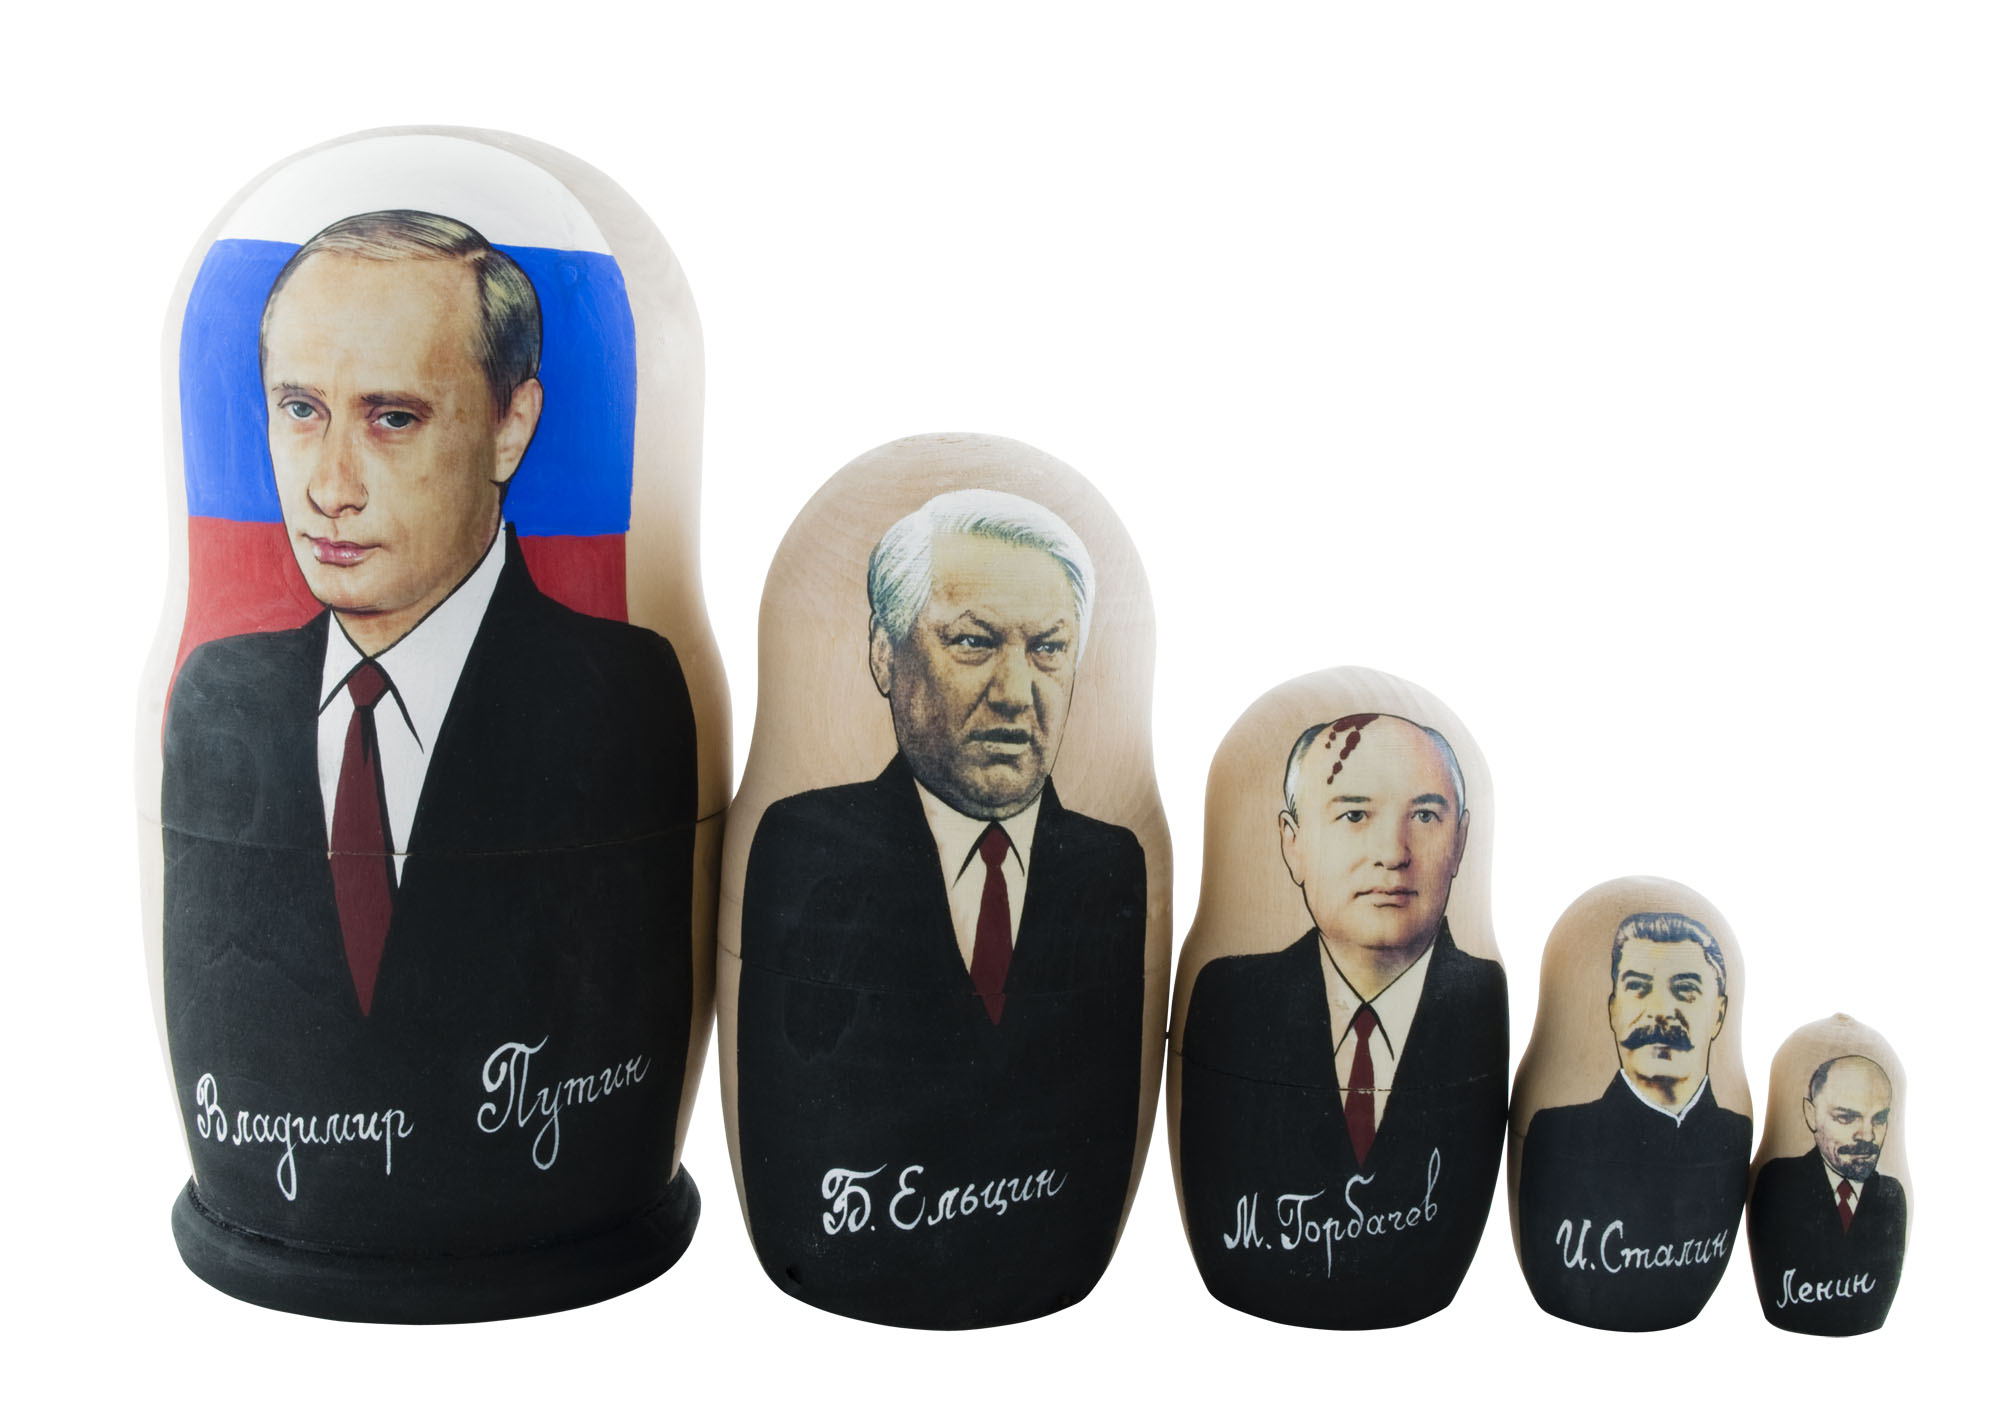 Buy Putin & Soviet Leaders Nesting Doll 5pc./6" at GoldenCockerel.com